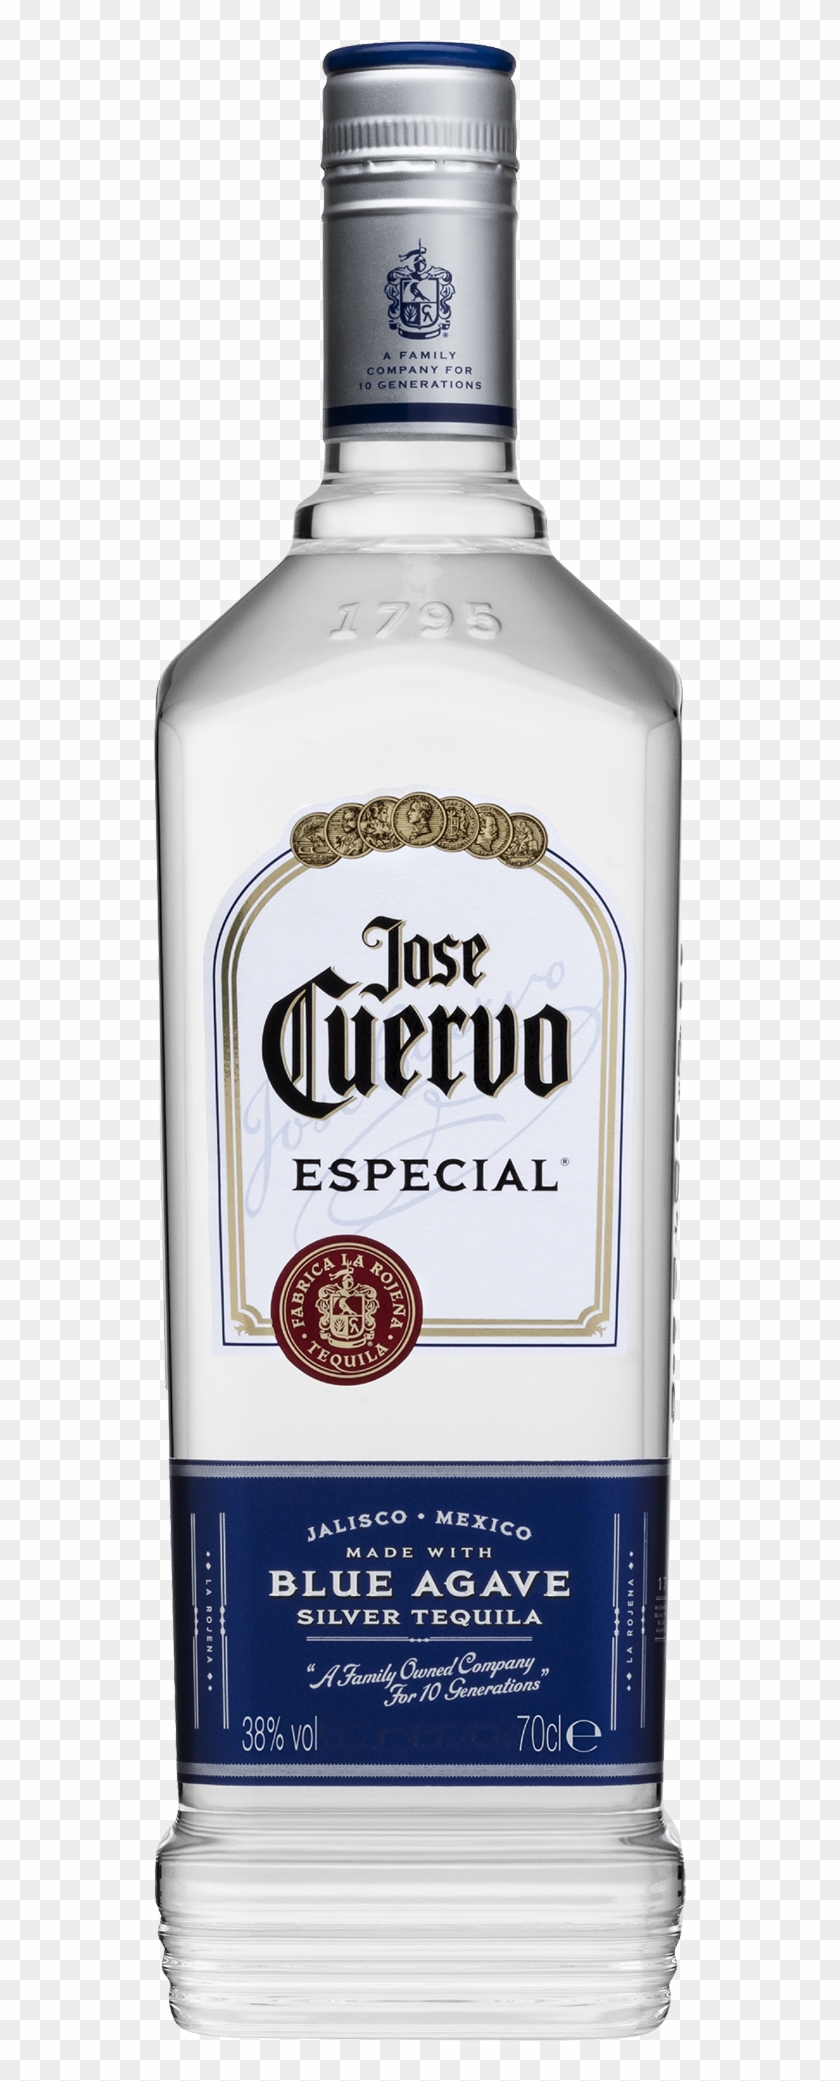 Jose Cuervo Bottle Svg